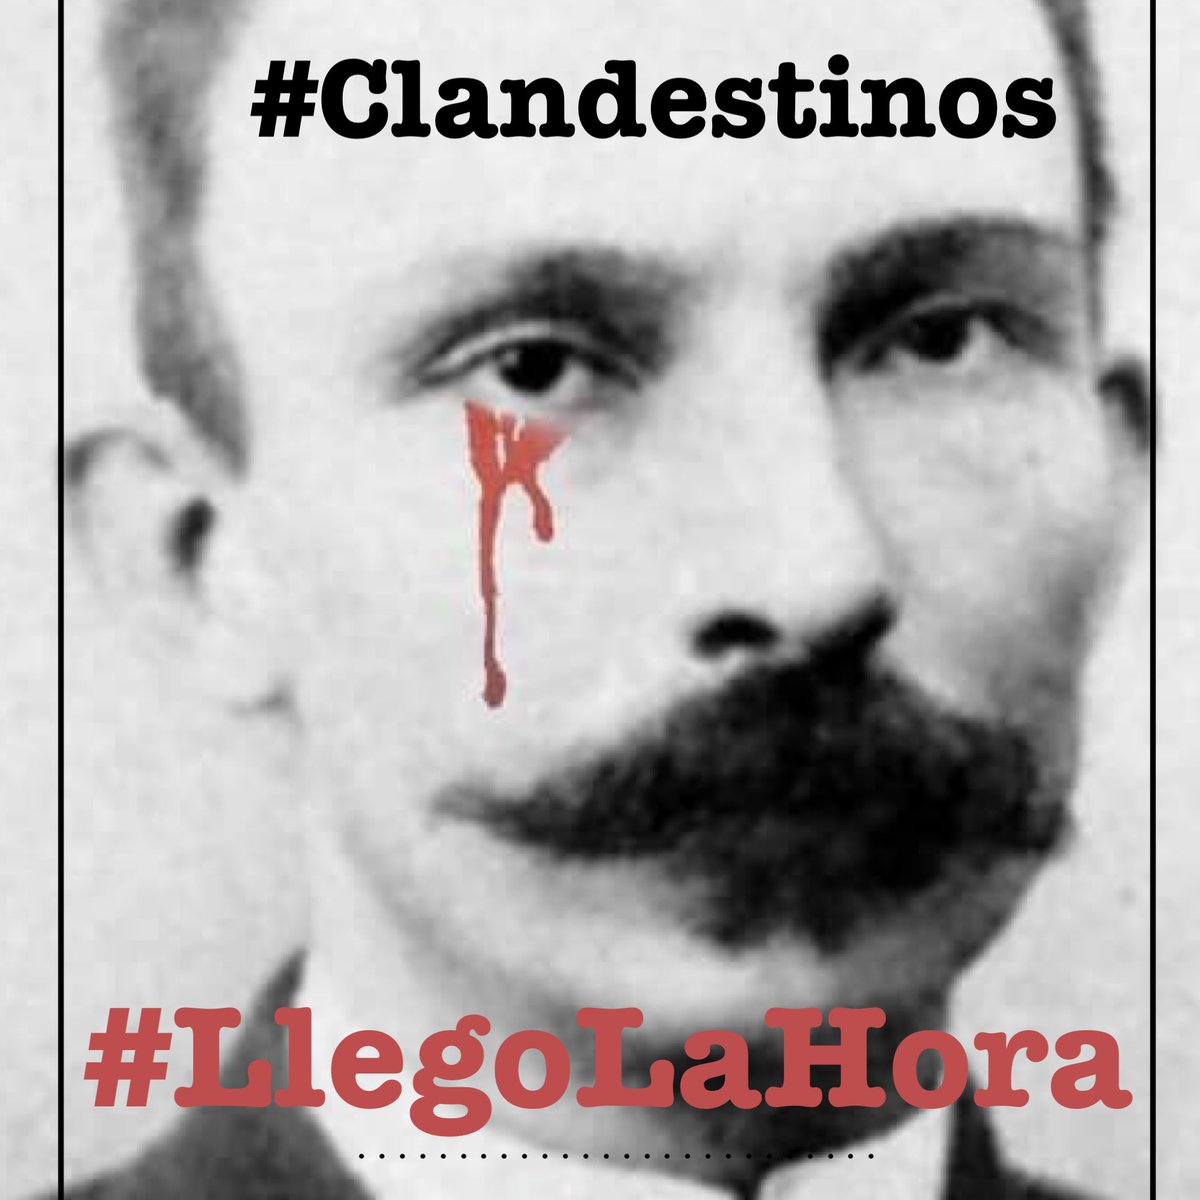 #Clandestinos #LlegoLaHora de empapelar La Habana y #Cuba entera. Que no quede una sola impresora sin imprimir el llanto de Martí. Que nuestras madres no lloren más lágrimas de sangre. Que cada esbirro corra a esconderse o pague por sus crímenes. #AldeaTwitter #ElCambioEsYa